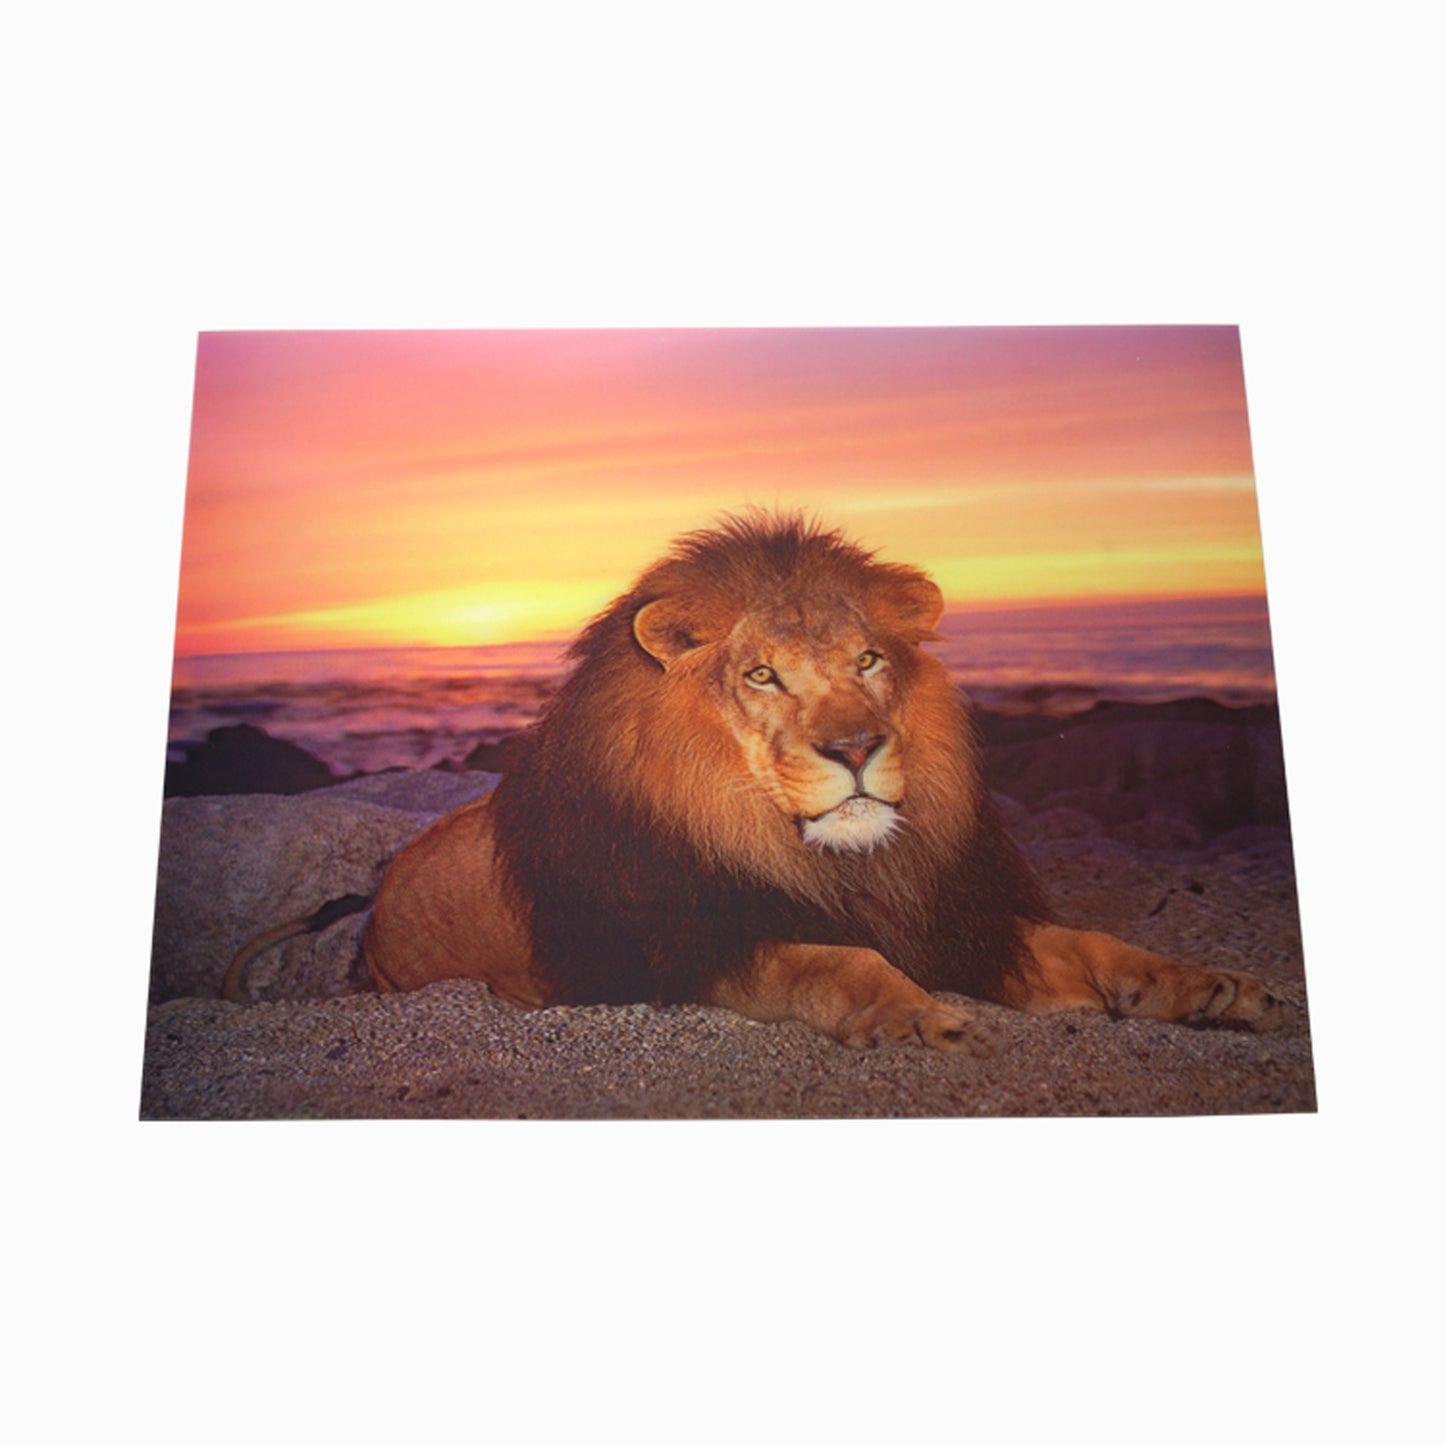 3D Flip Lenticular Lion Picture